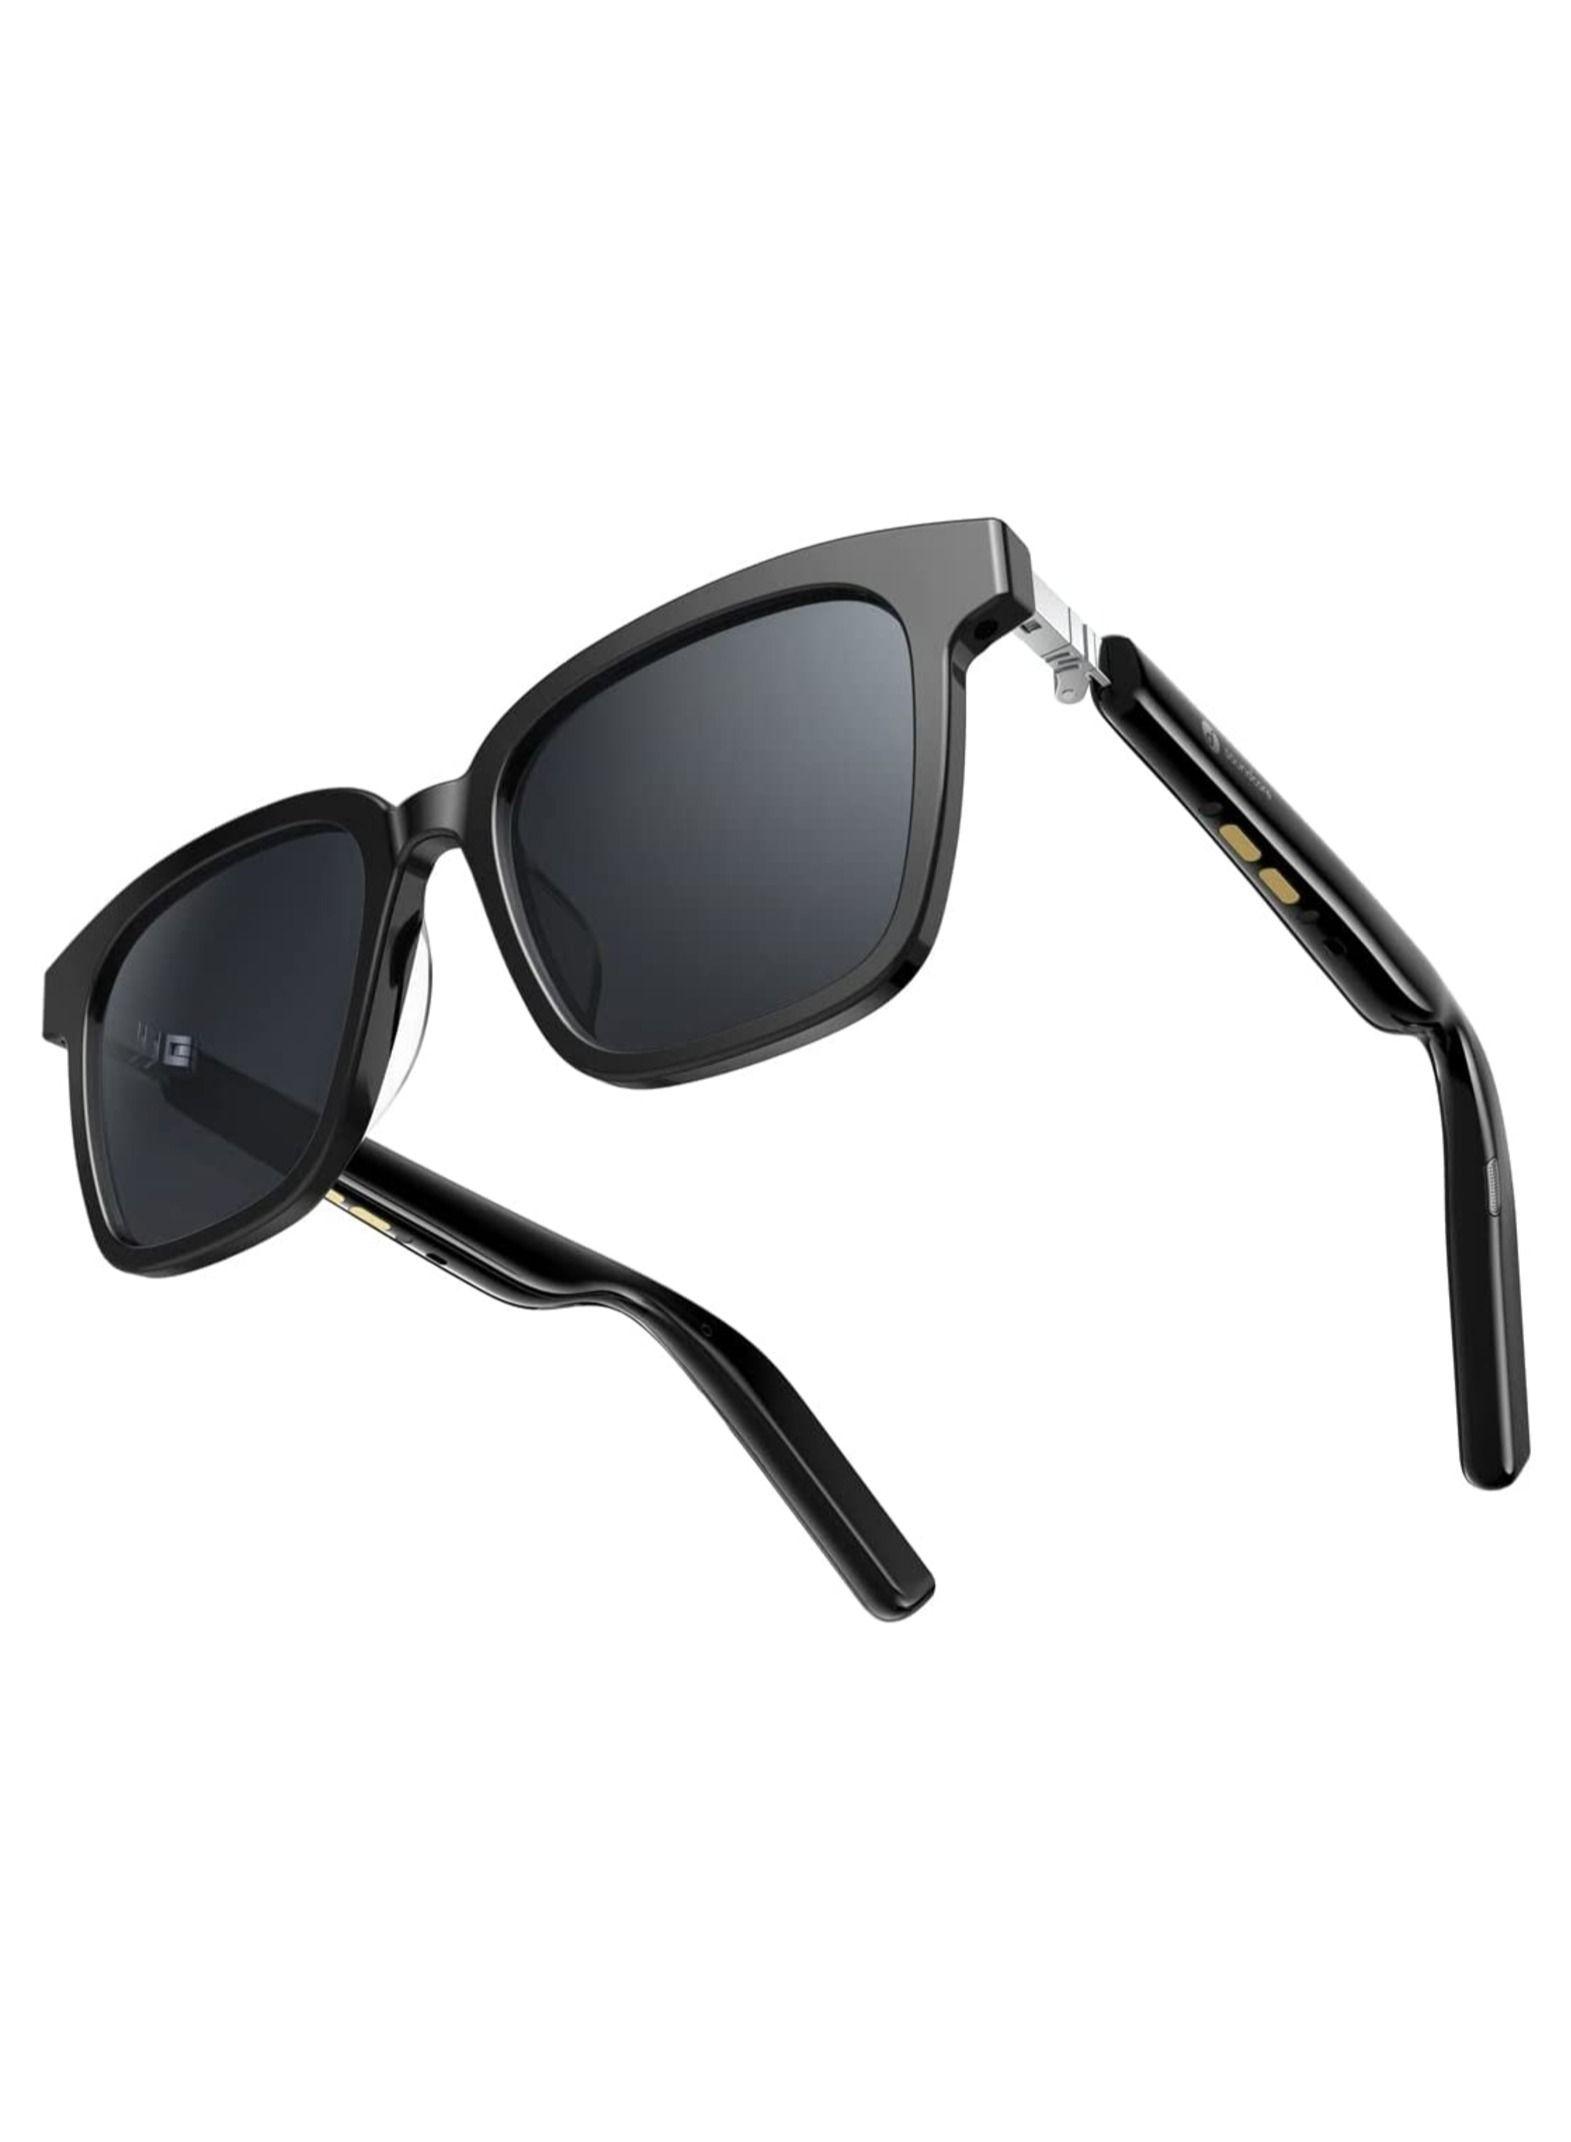 نظارة شمسية ذكية بلوتوث 48 ملم أسود ساوندكور Soundcore Bluetooth Smart Sunglasses With Polarized Lenses And Tap To Call Option